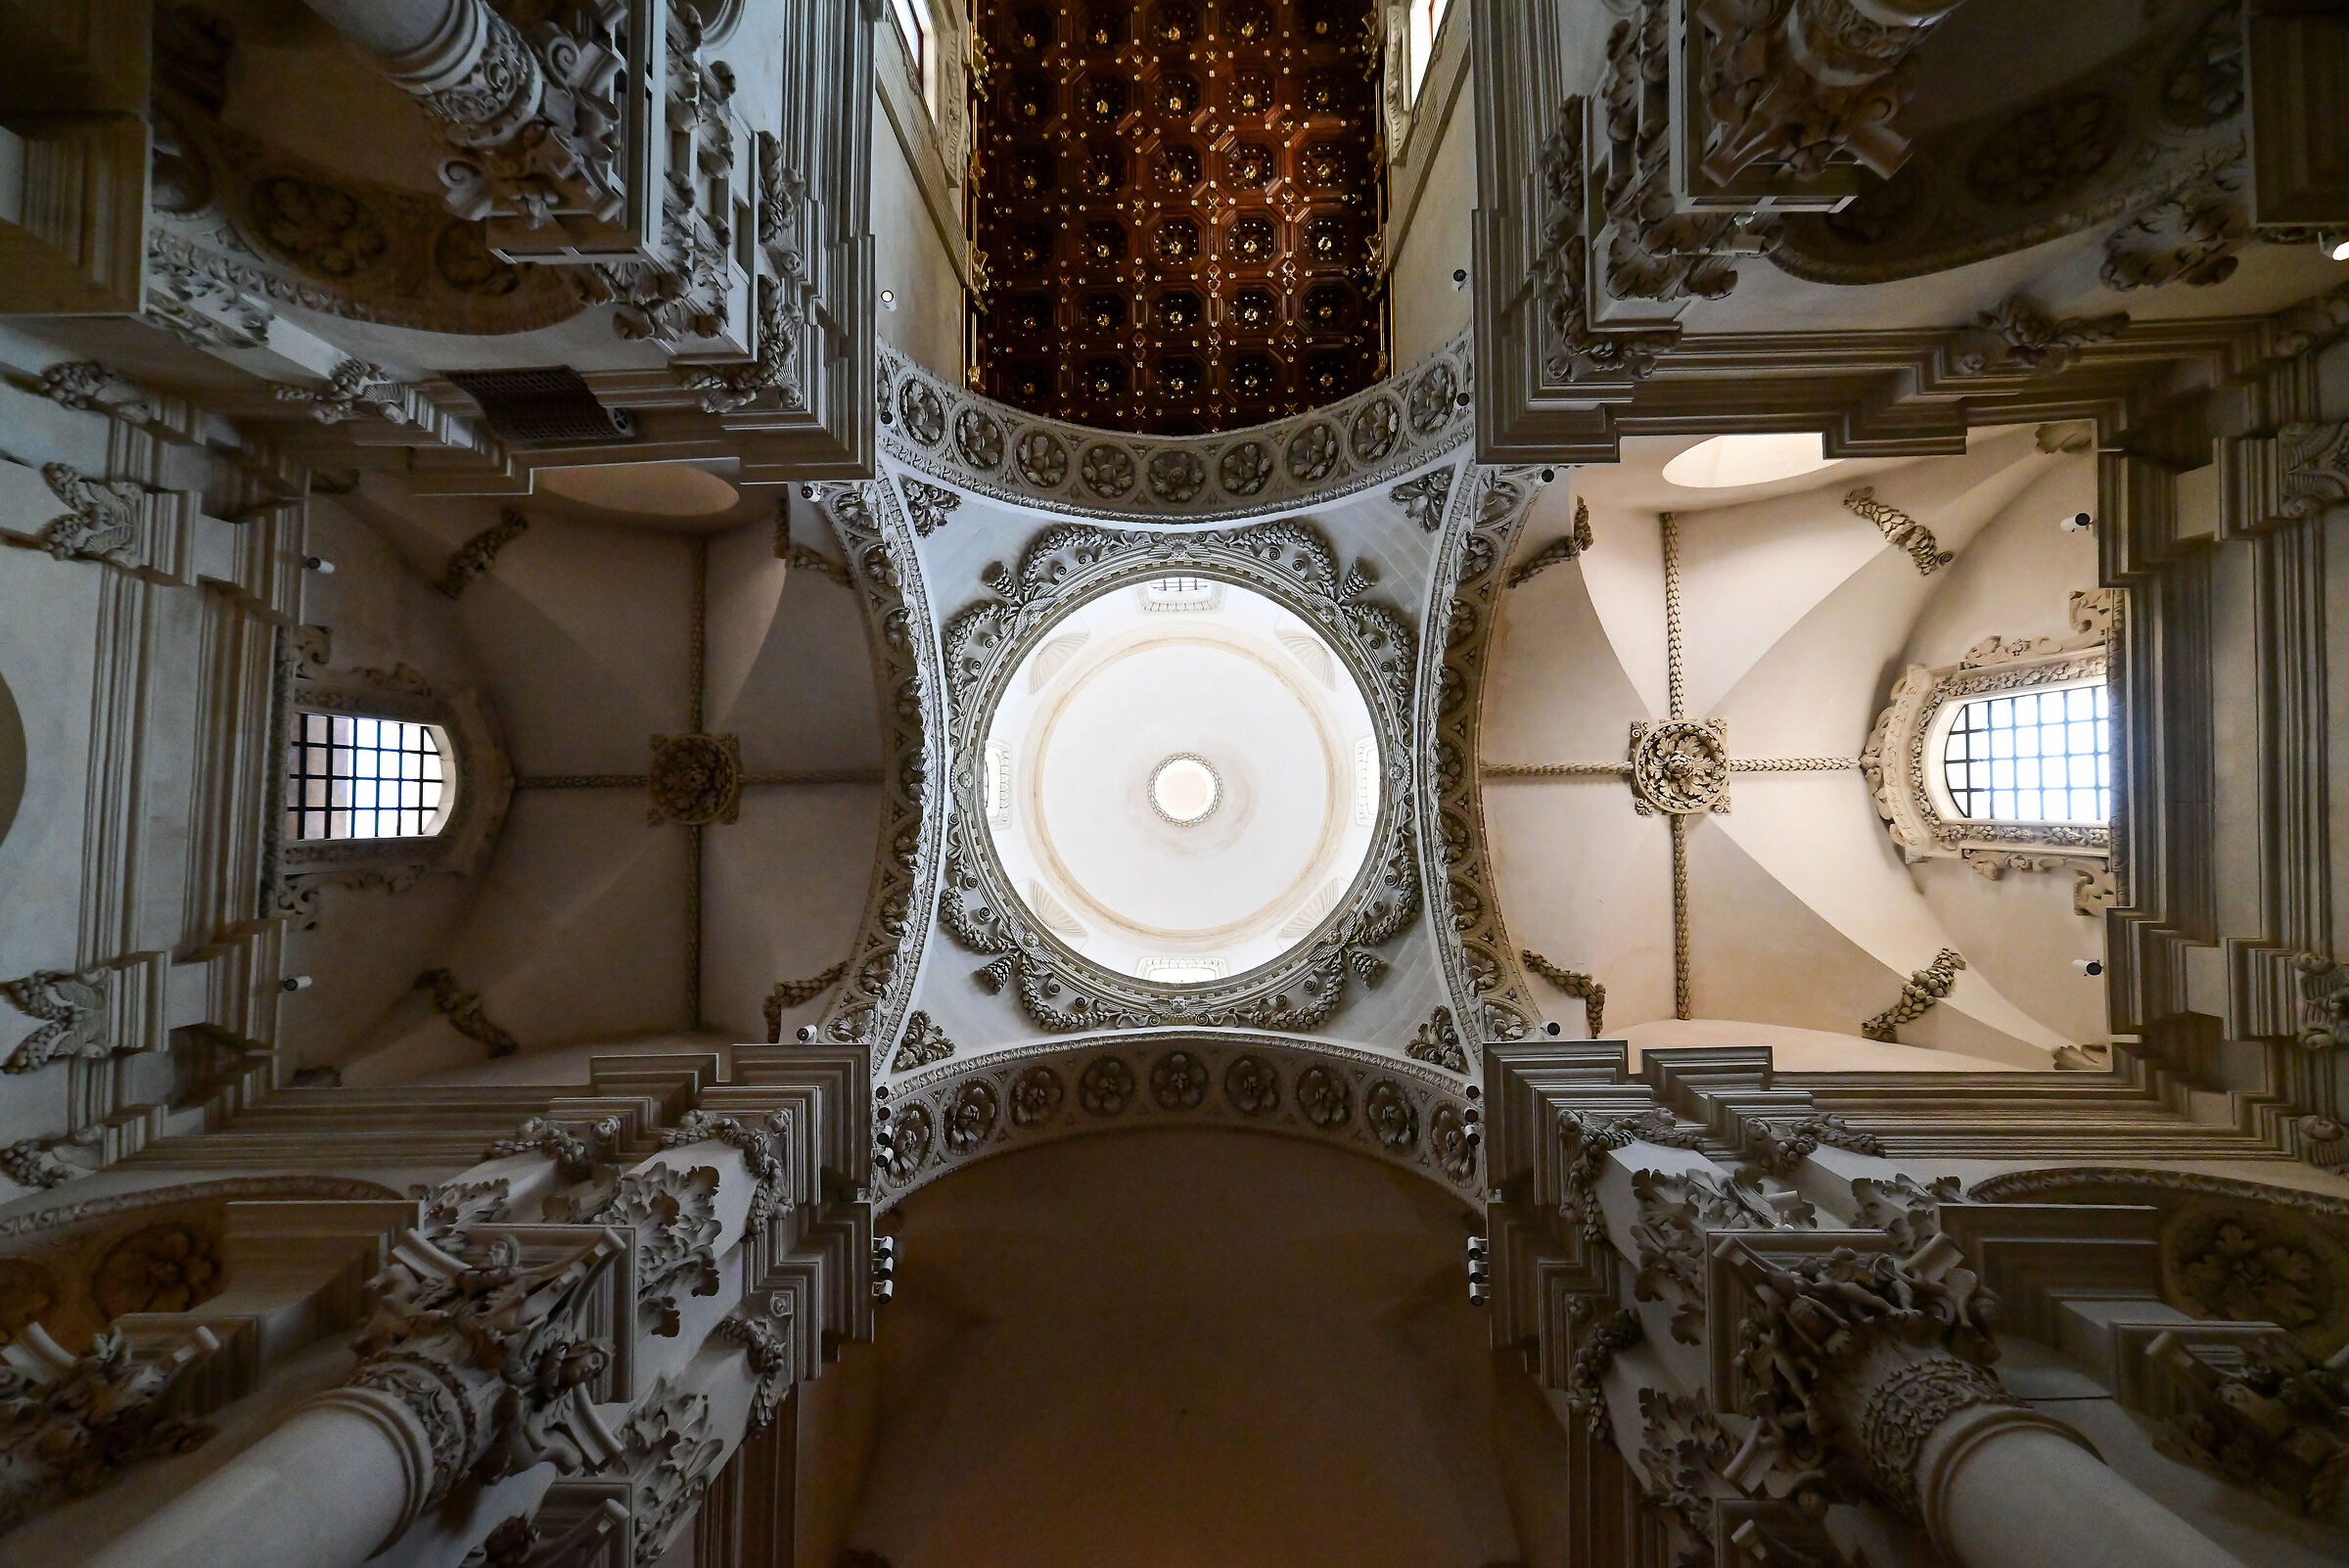 Basilica Santa Croce Lecce...